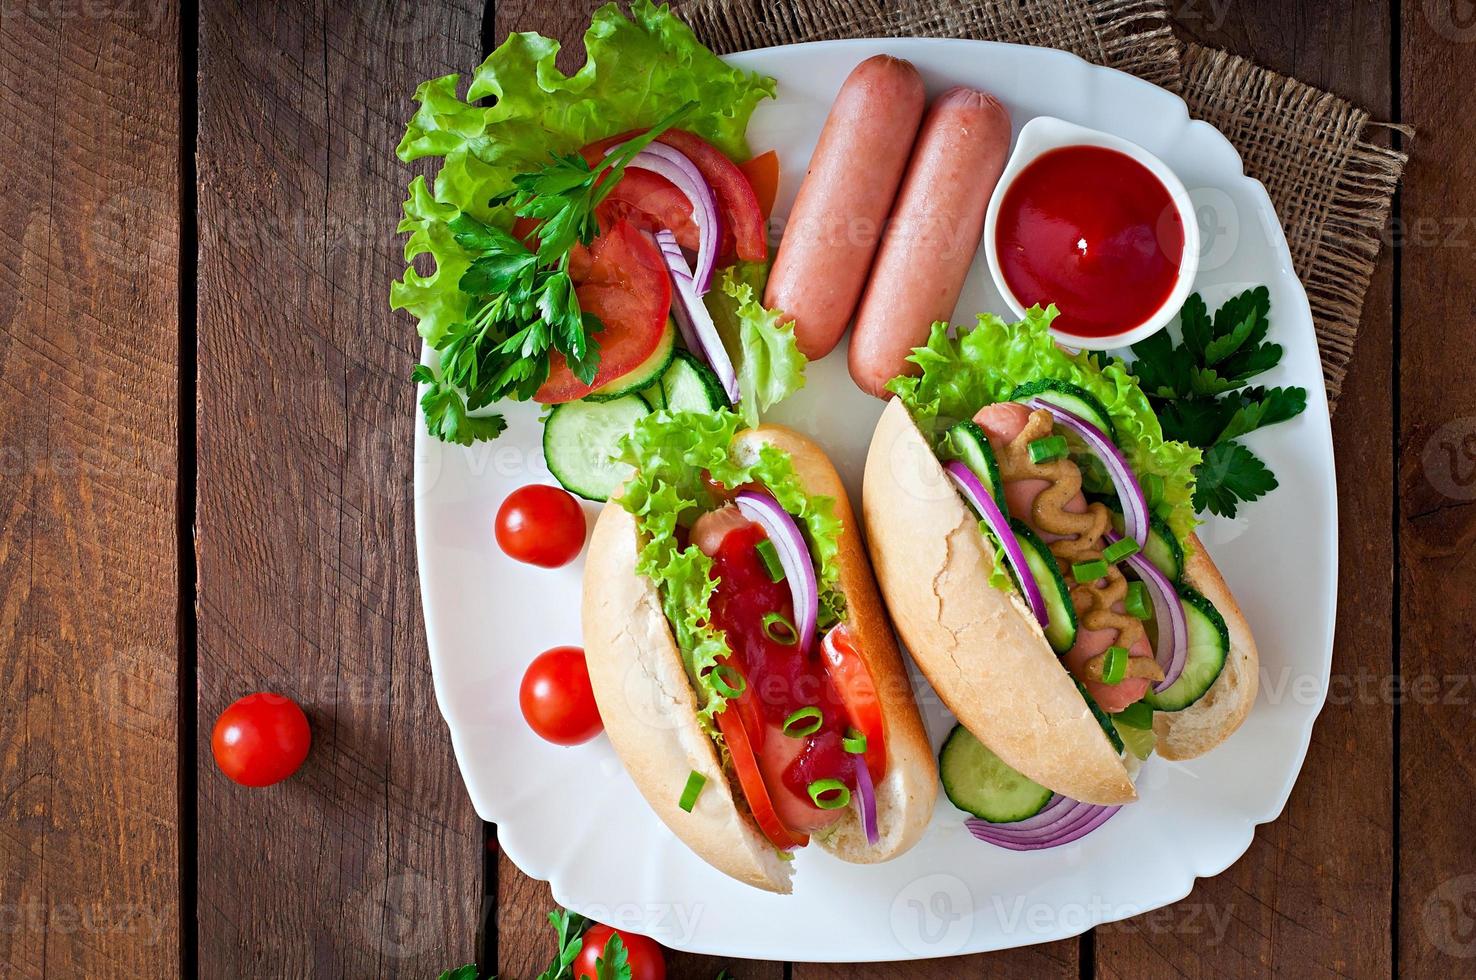 Hot-Dog avec du ketchup, de la moutarde, de la laitue et des légumes sur une table en bois photo